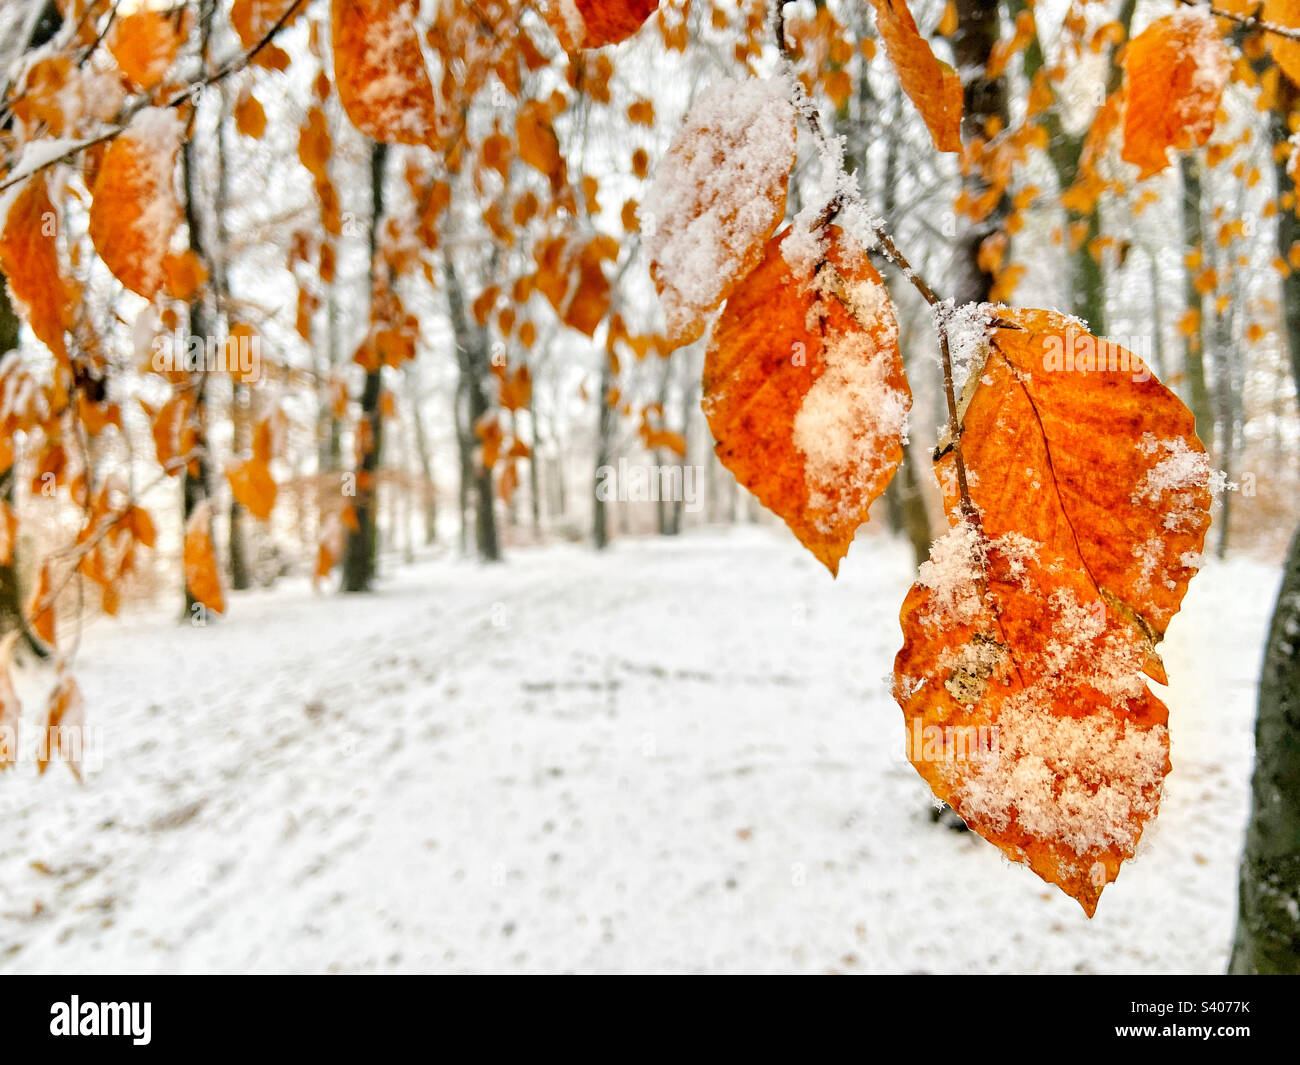 Neige couverte feuilles de fin d'automne sur fond de forêt enneigée Banque D'Images